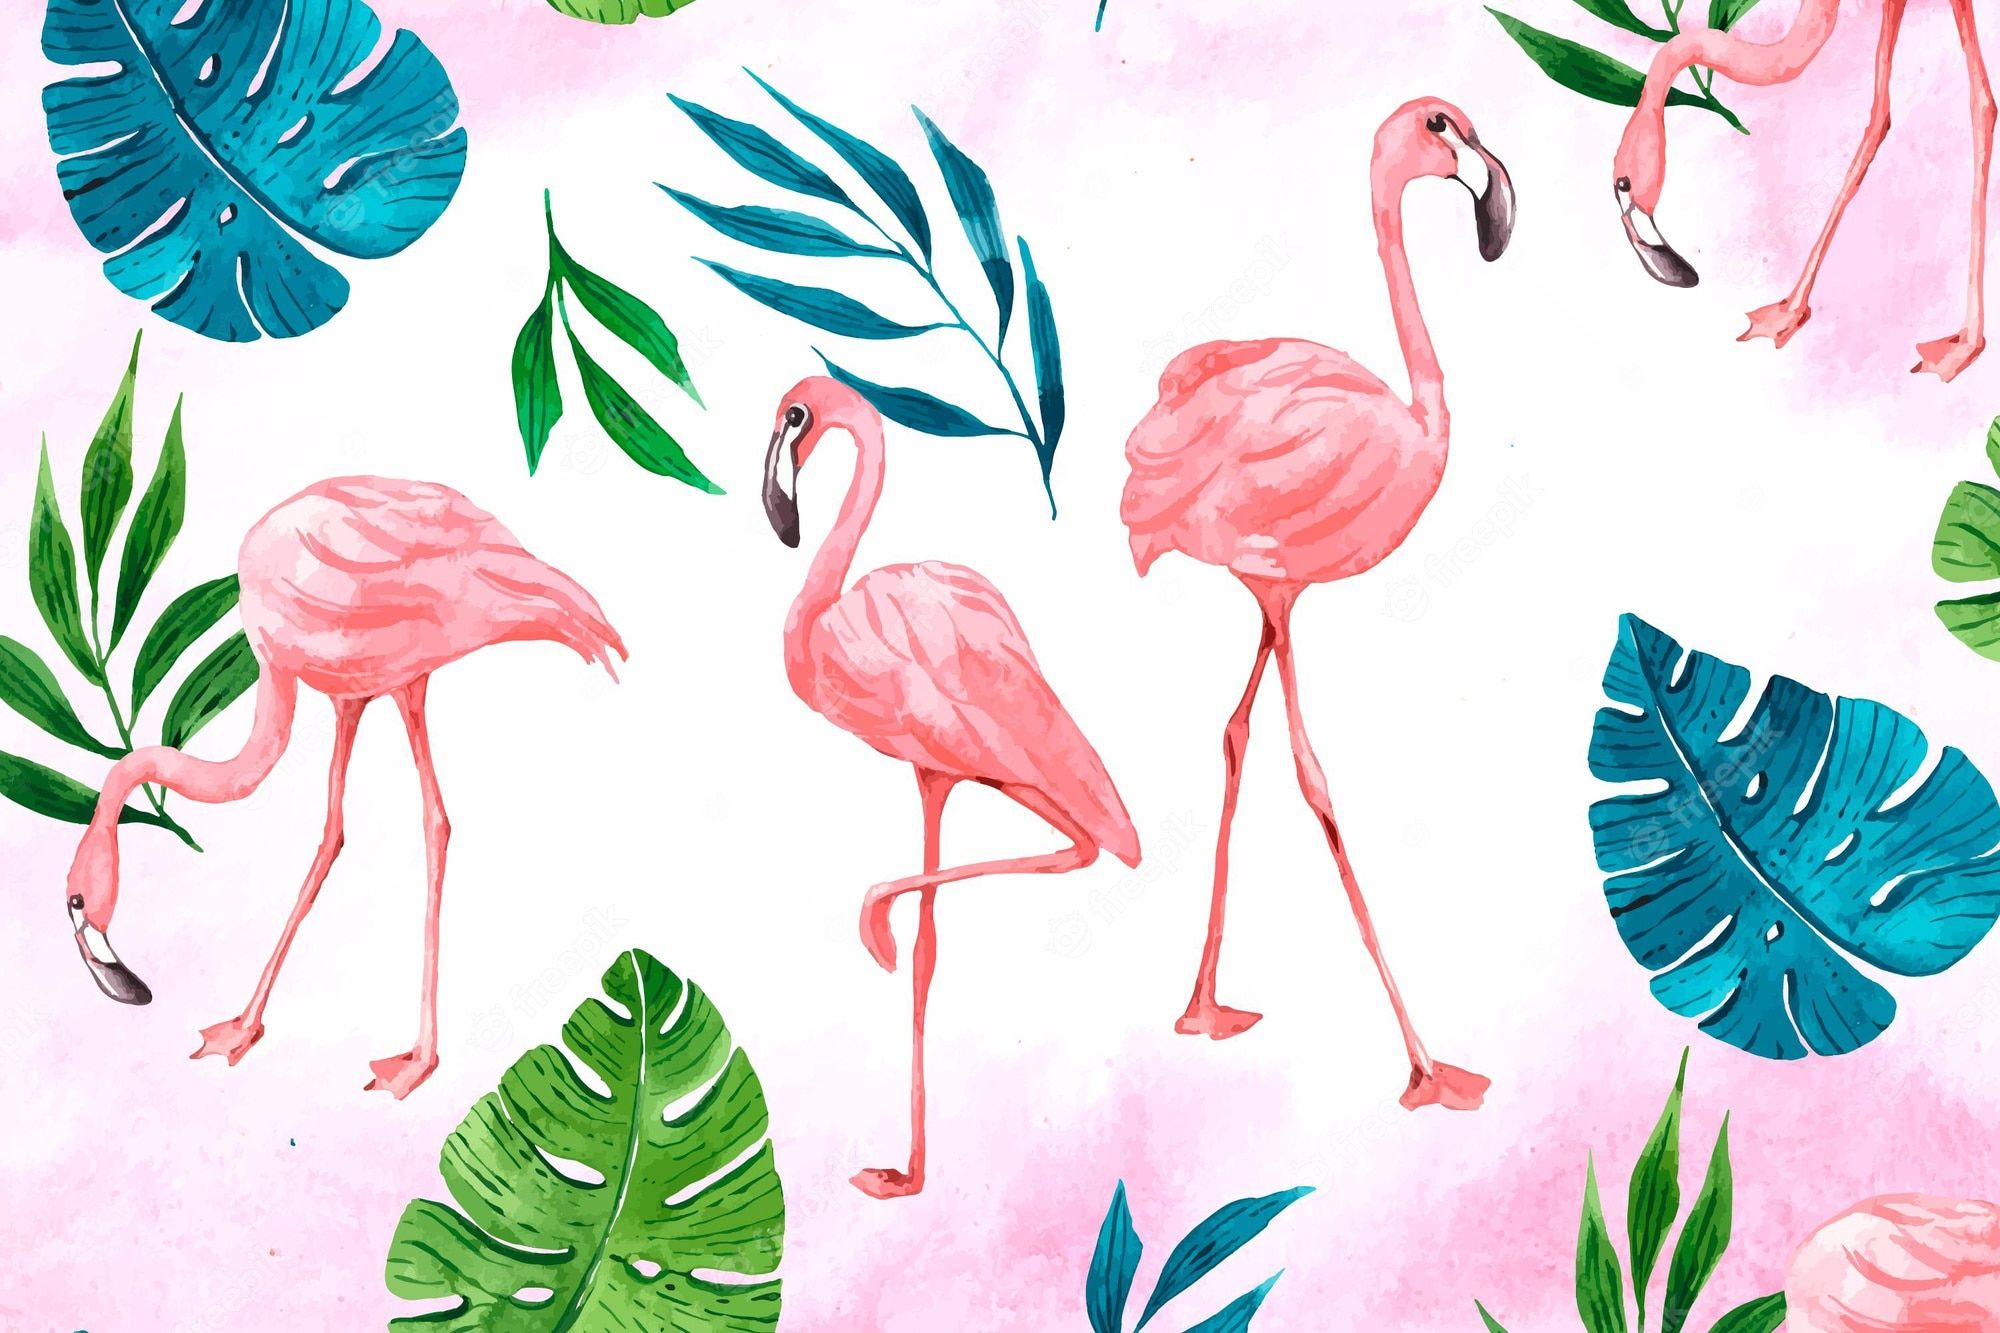  Flamingo Hintergrundbild 2000x1333. Flamingo Wallpaper Bilder Download auf Freepik